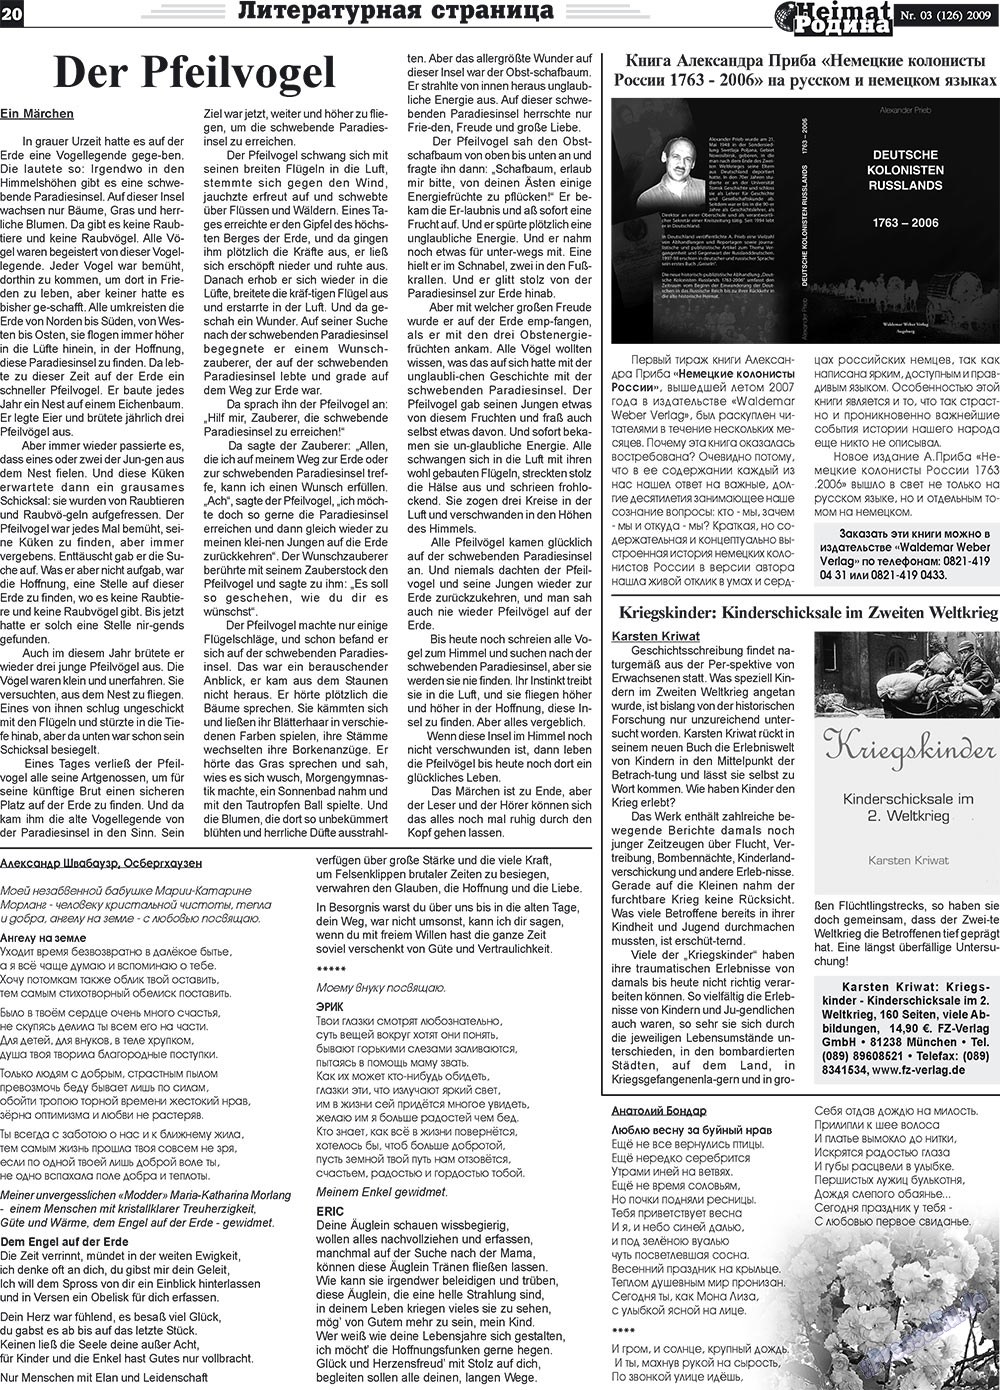 Heimat-Родина (газета). 2009 год, номер 3, стр. 20